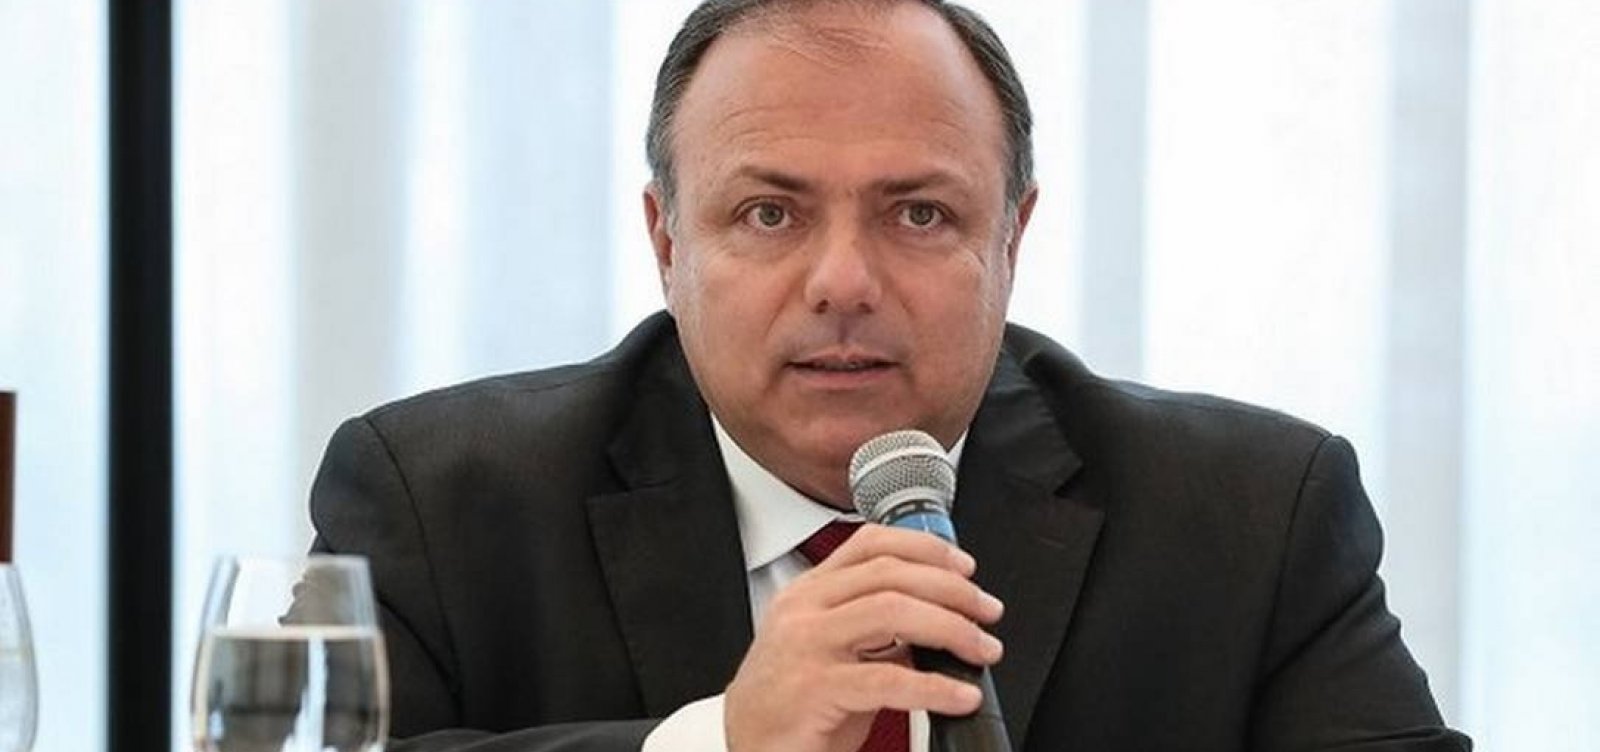 Com Covid-19, ministro da Saúde Pazuello é internado em Brasília